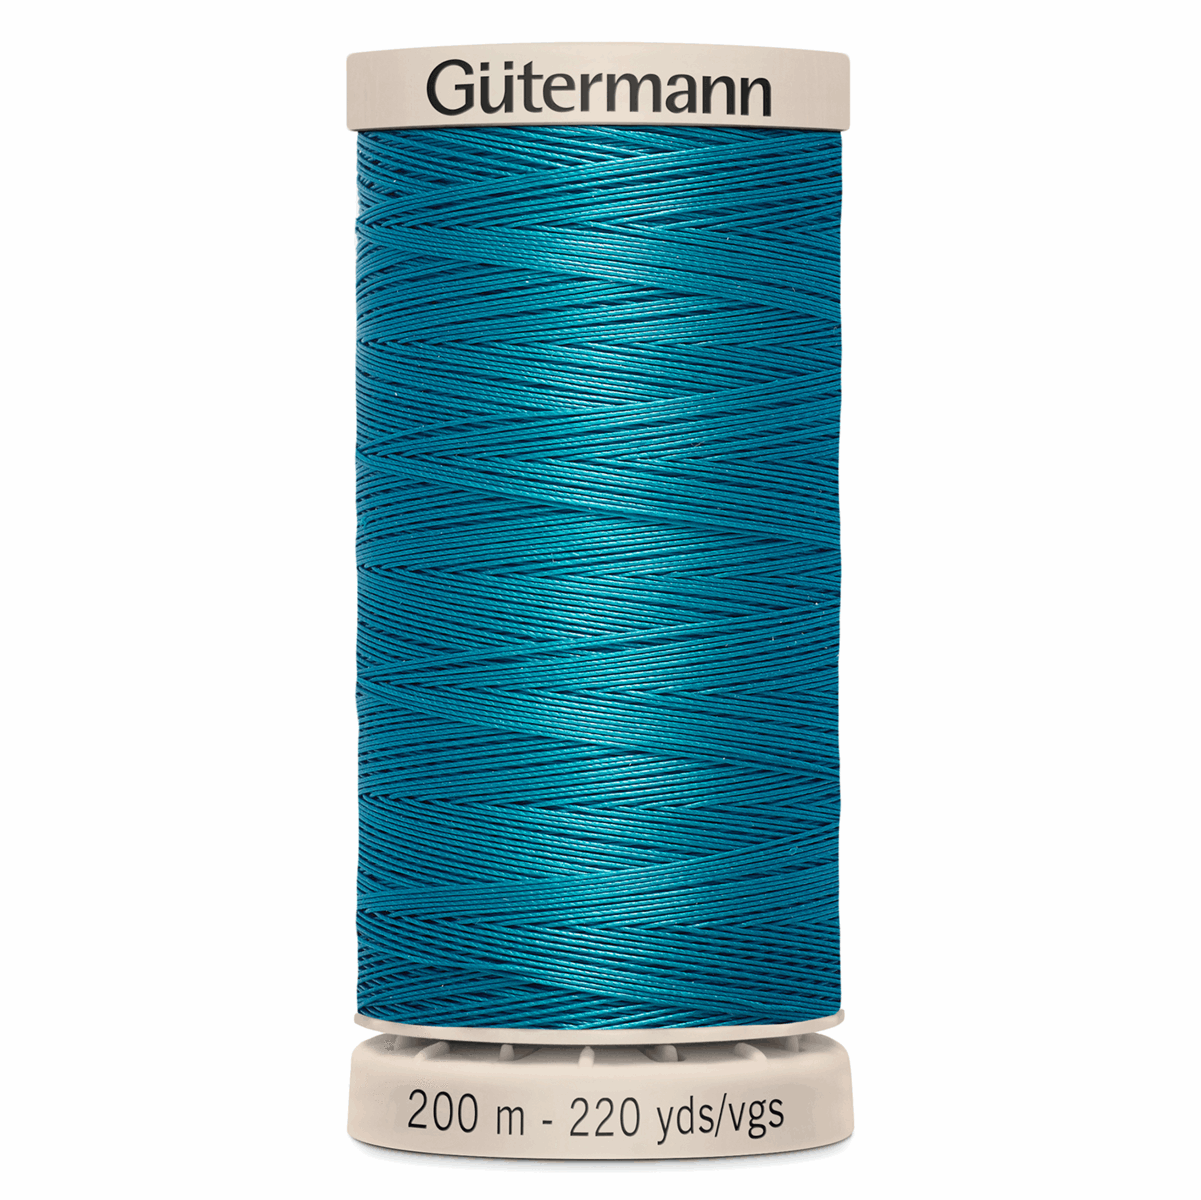 Gutermann Quilting Thread 200m - Colour 6934